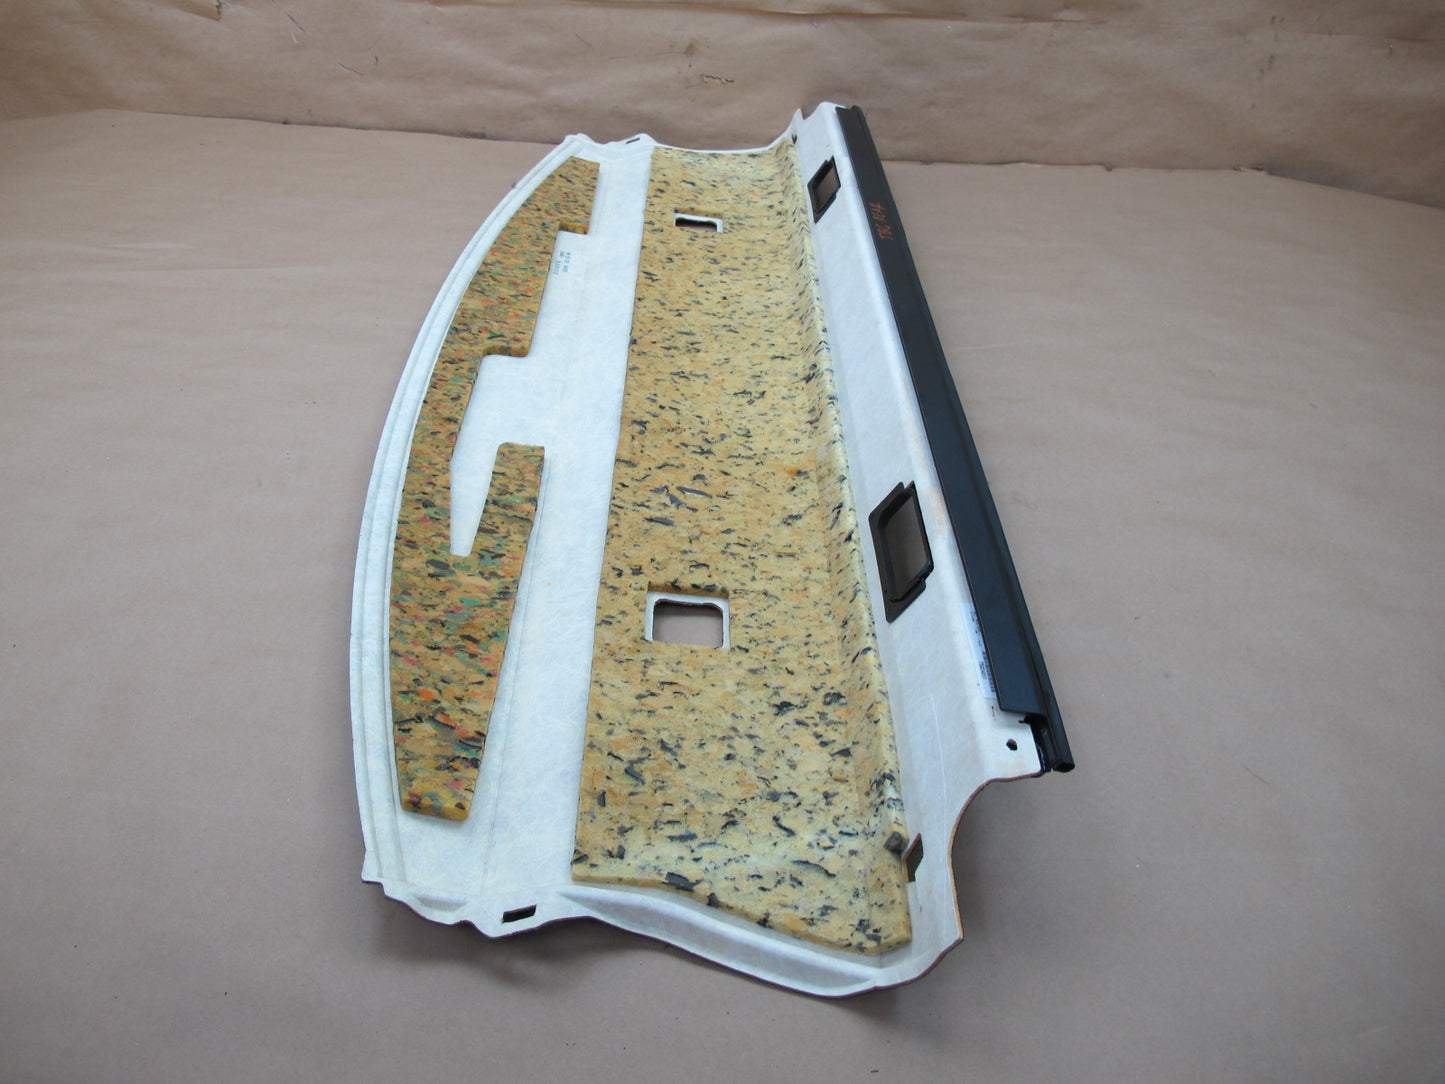 07-13 BMW E92 Coupe Rear Parcel Shelf Deck Trim Panel OEM